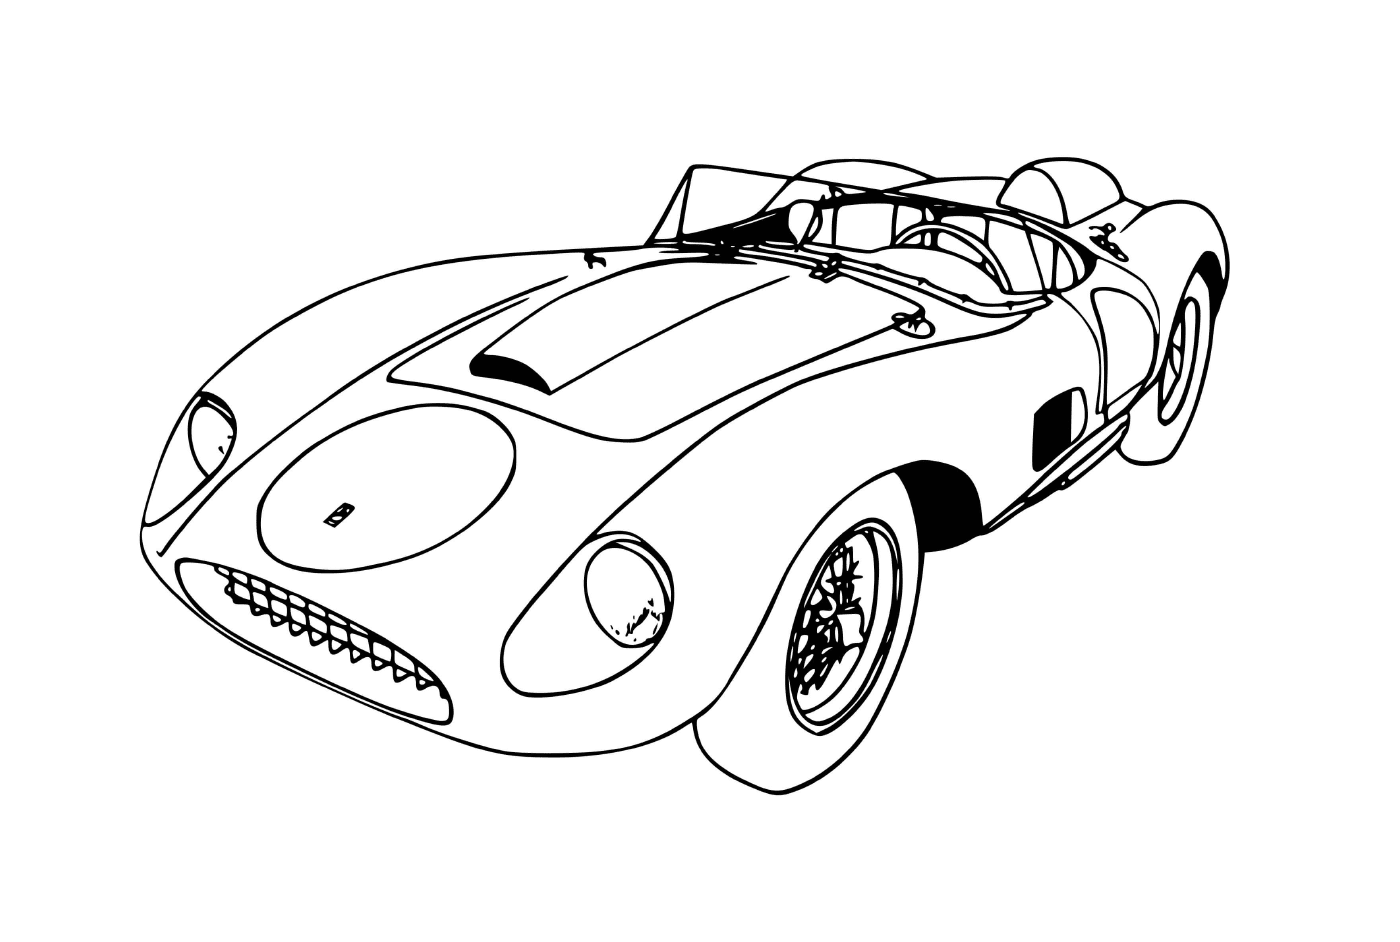  Un coche Ferrari f70 